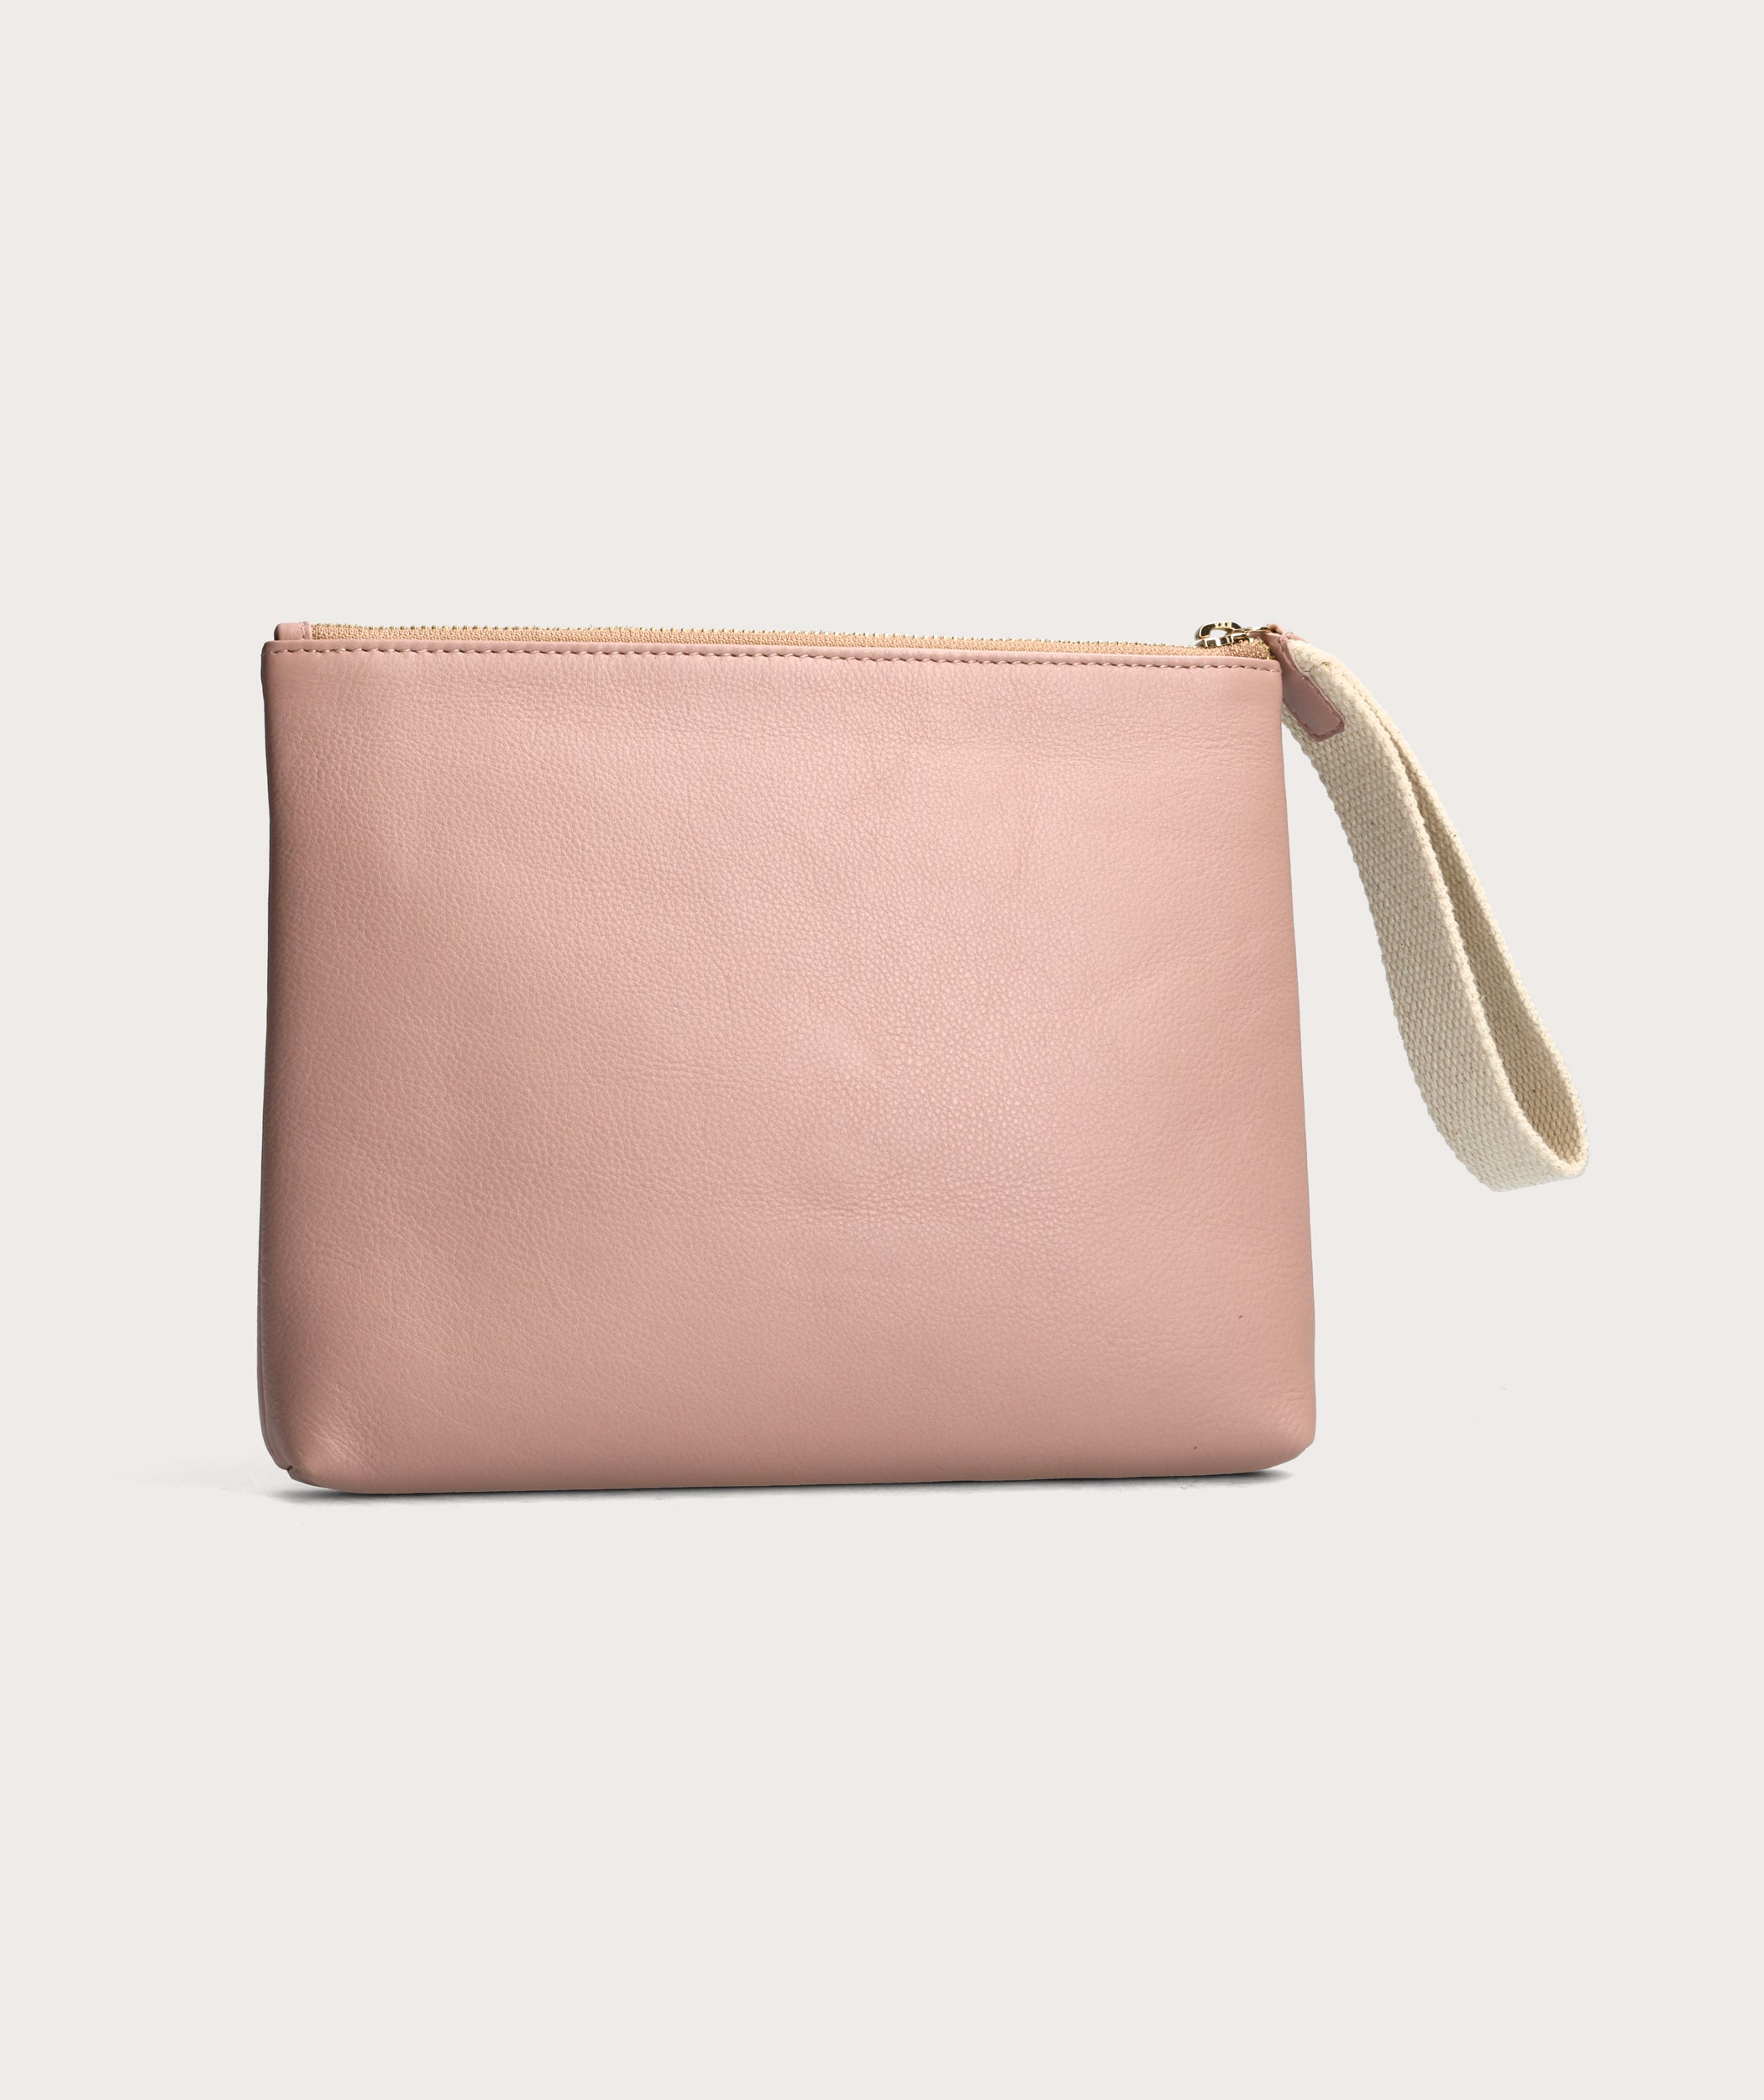 STAUD Handbags - Leather Bag, Beaded Bag, Shoulder Bag – tagged 